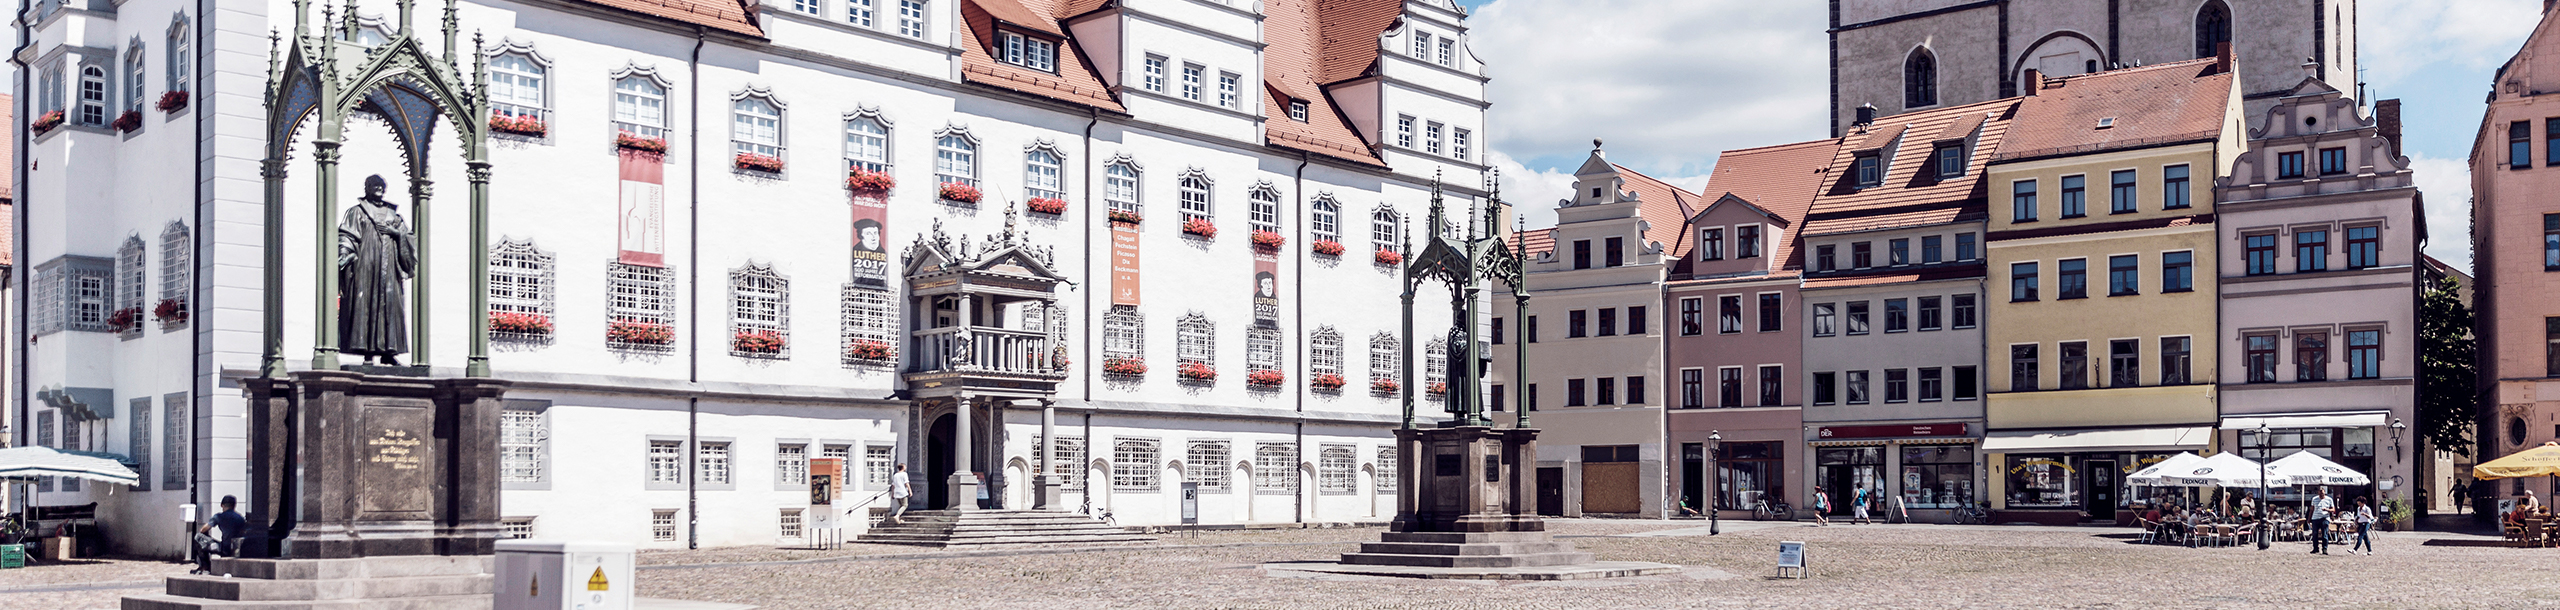 Marktplatz und historisches Rathaus von Wittenberg